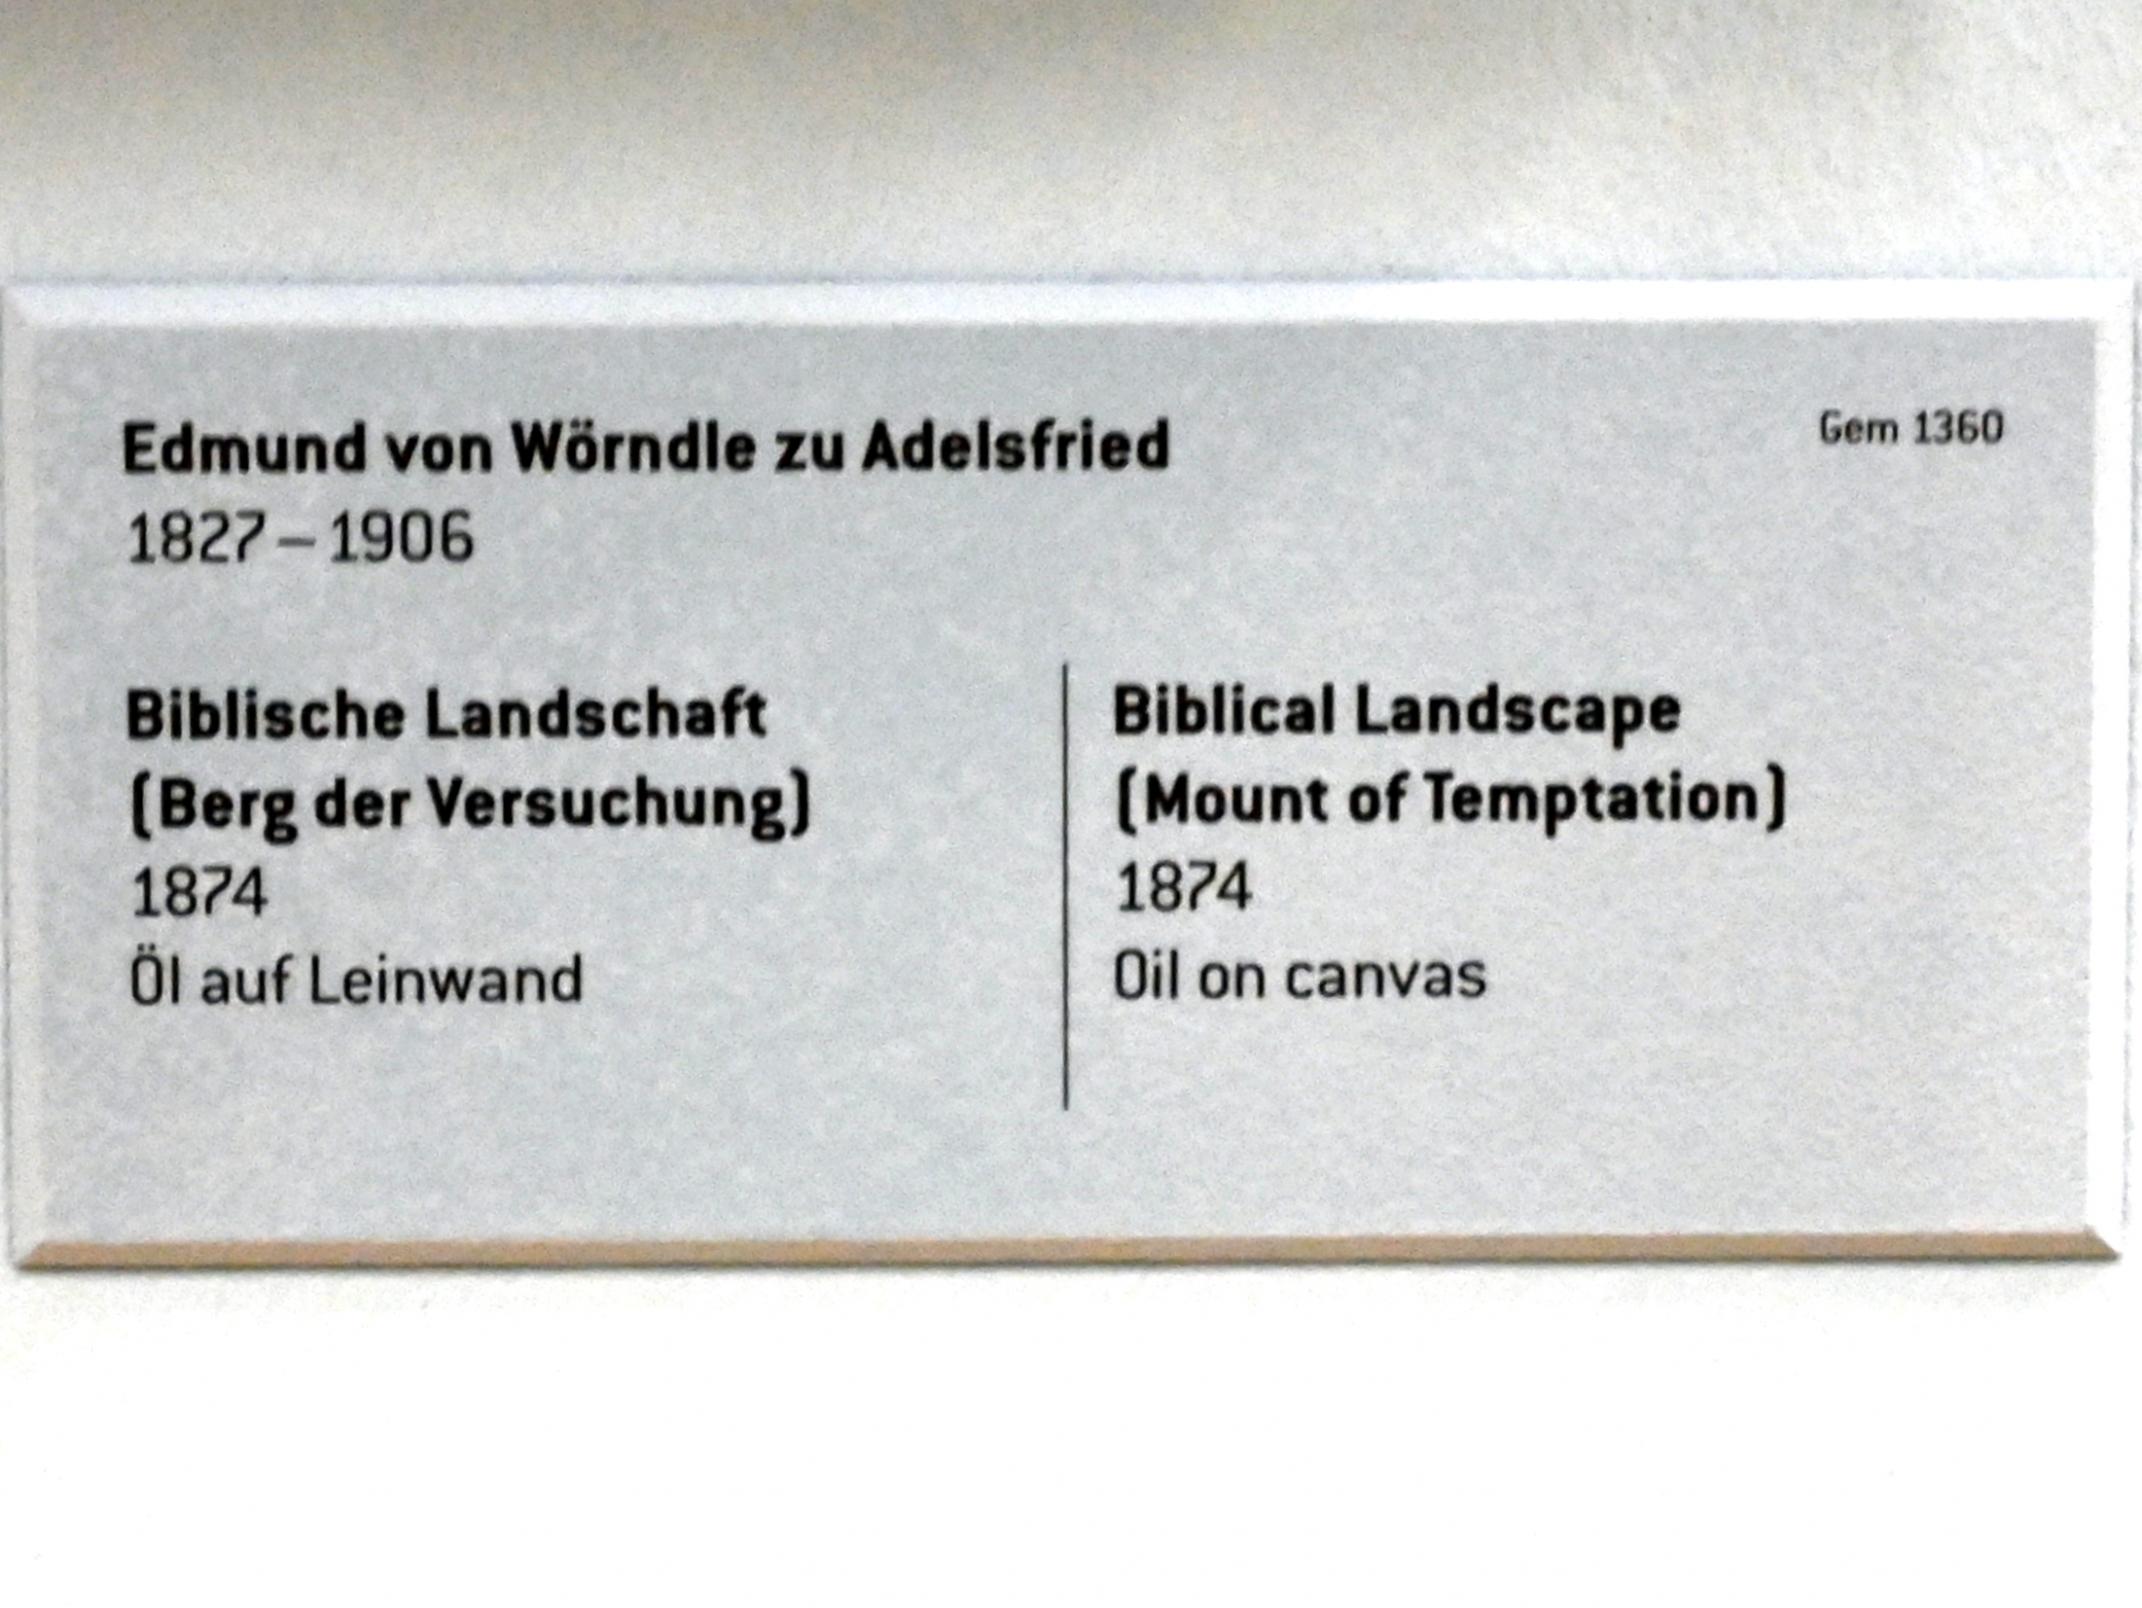 Edmund von Wörndle (1874), Biblische Landschaft (Berg der Versuchung), Innsbruck, Tiroler Landesmuseum, Ferdinandeum, Saal 6, 1874, Bild 2/2